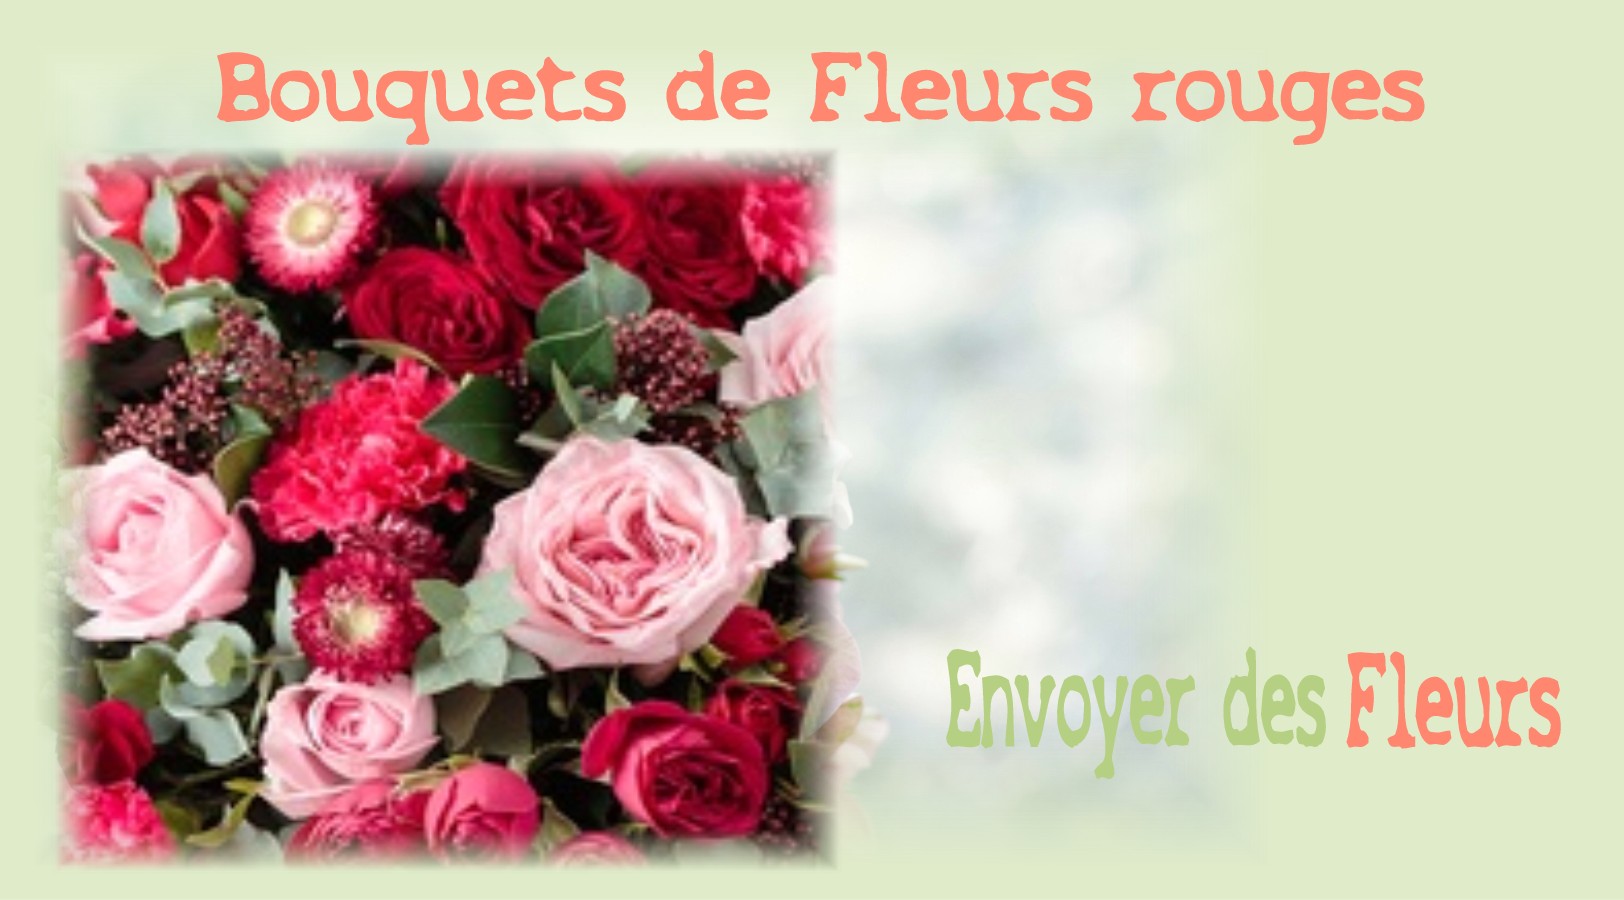 BOUQUETS DE FLEURS ROUGES - FLEURISTE TOULOUSE (31) - ENVOYER DES FLEURS